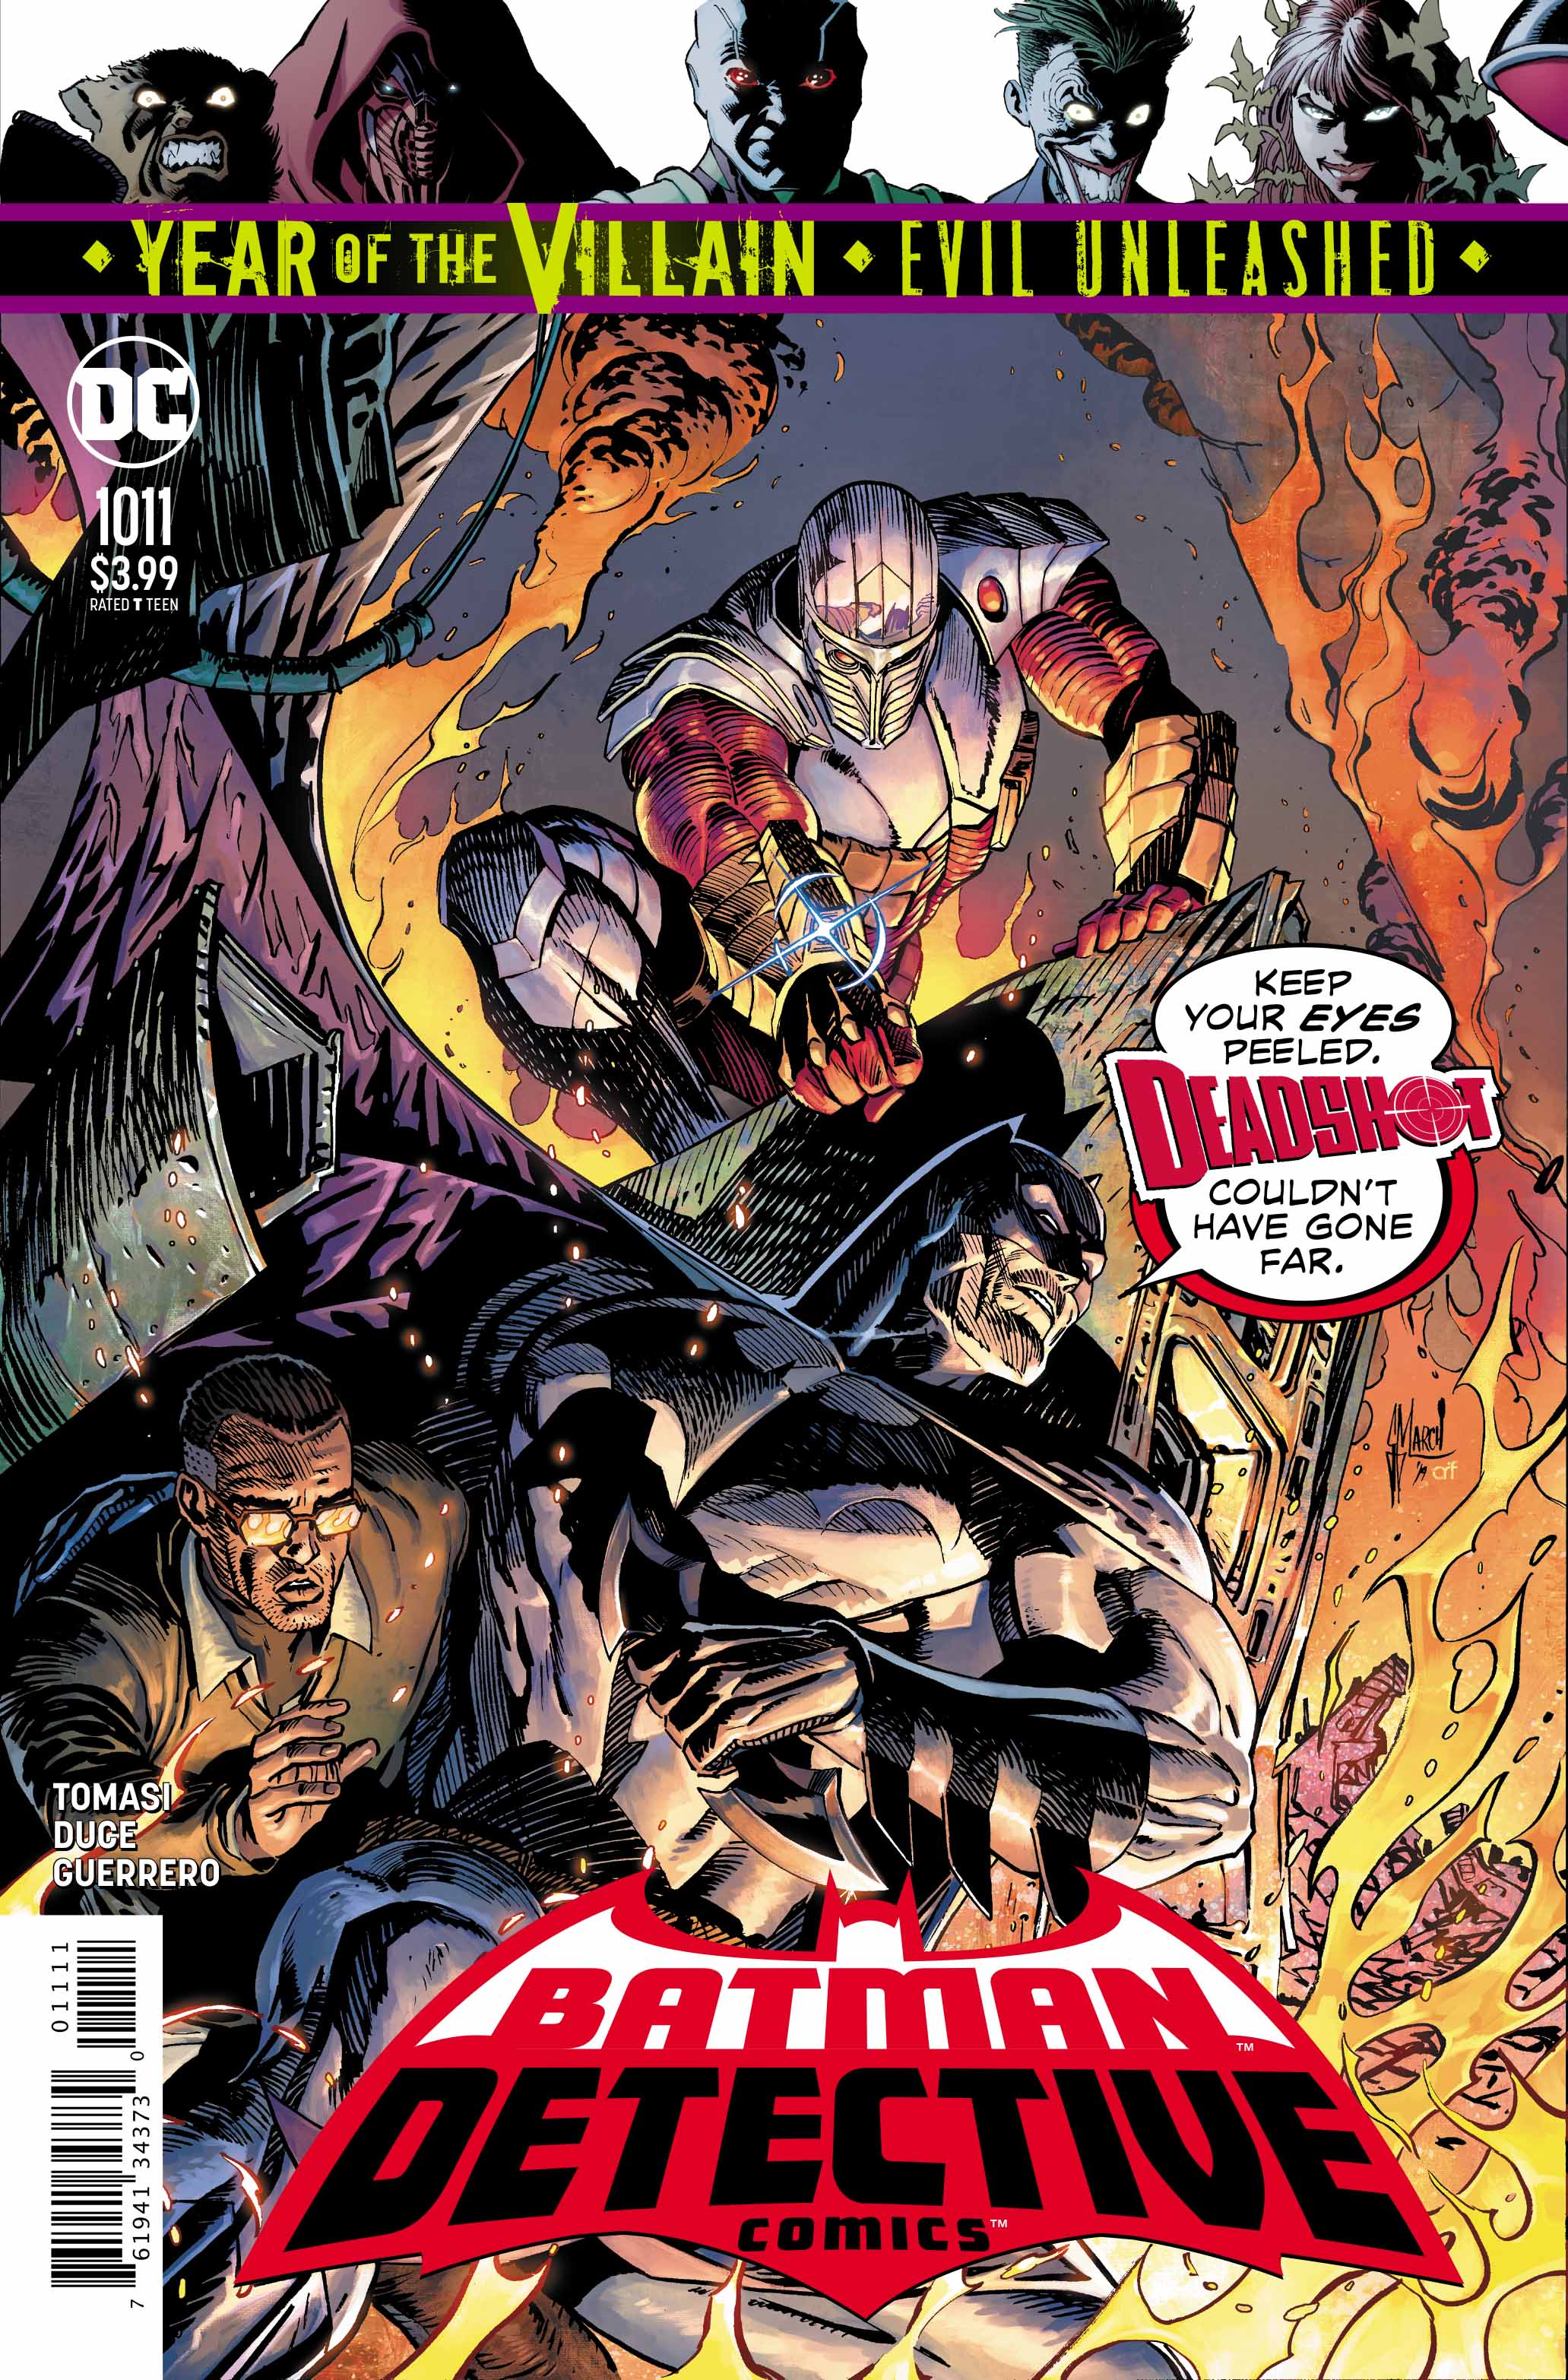 Detective Comics #1011 cover